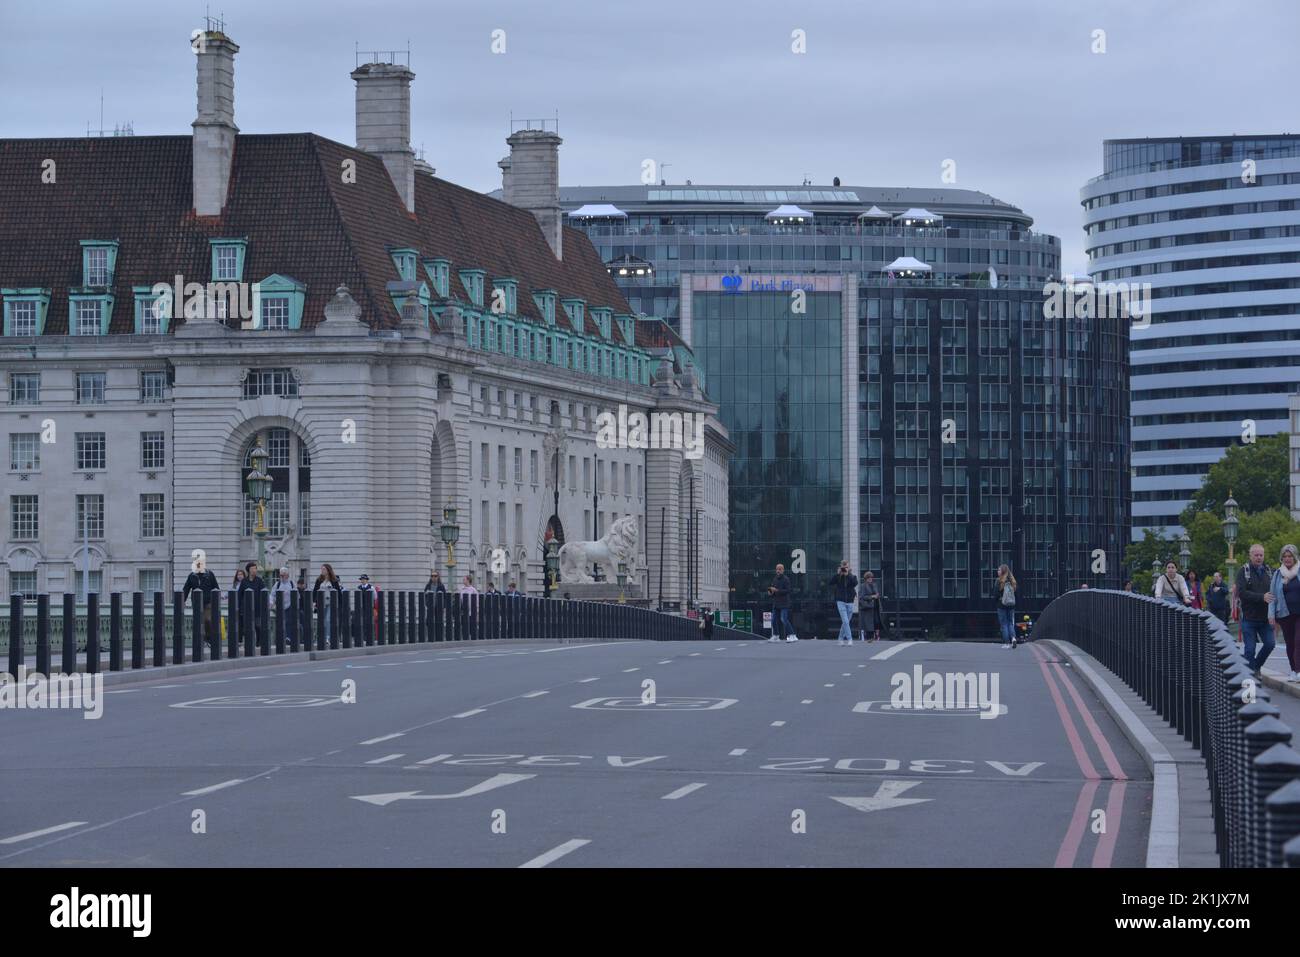 Staatsbegräbnis Ihrer Majestät Königin Elizabeth II., London, Großbritannien, Montag, 19.. September 2022. Die Westminster Bridge wurde zur Vorbereitung der Zeremonie für den Verkehr gesperrt. Stockfoto